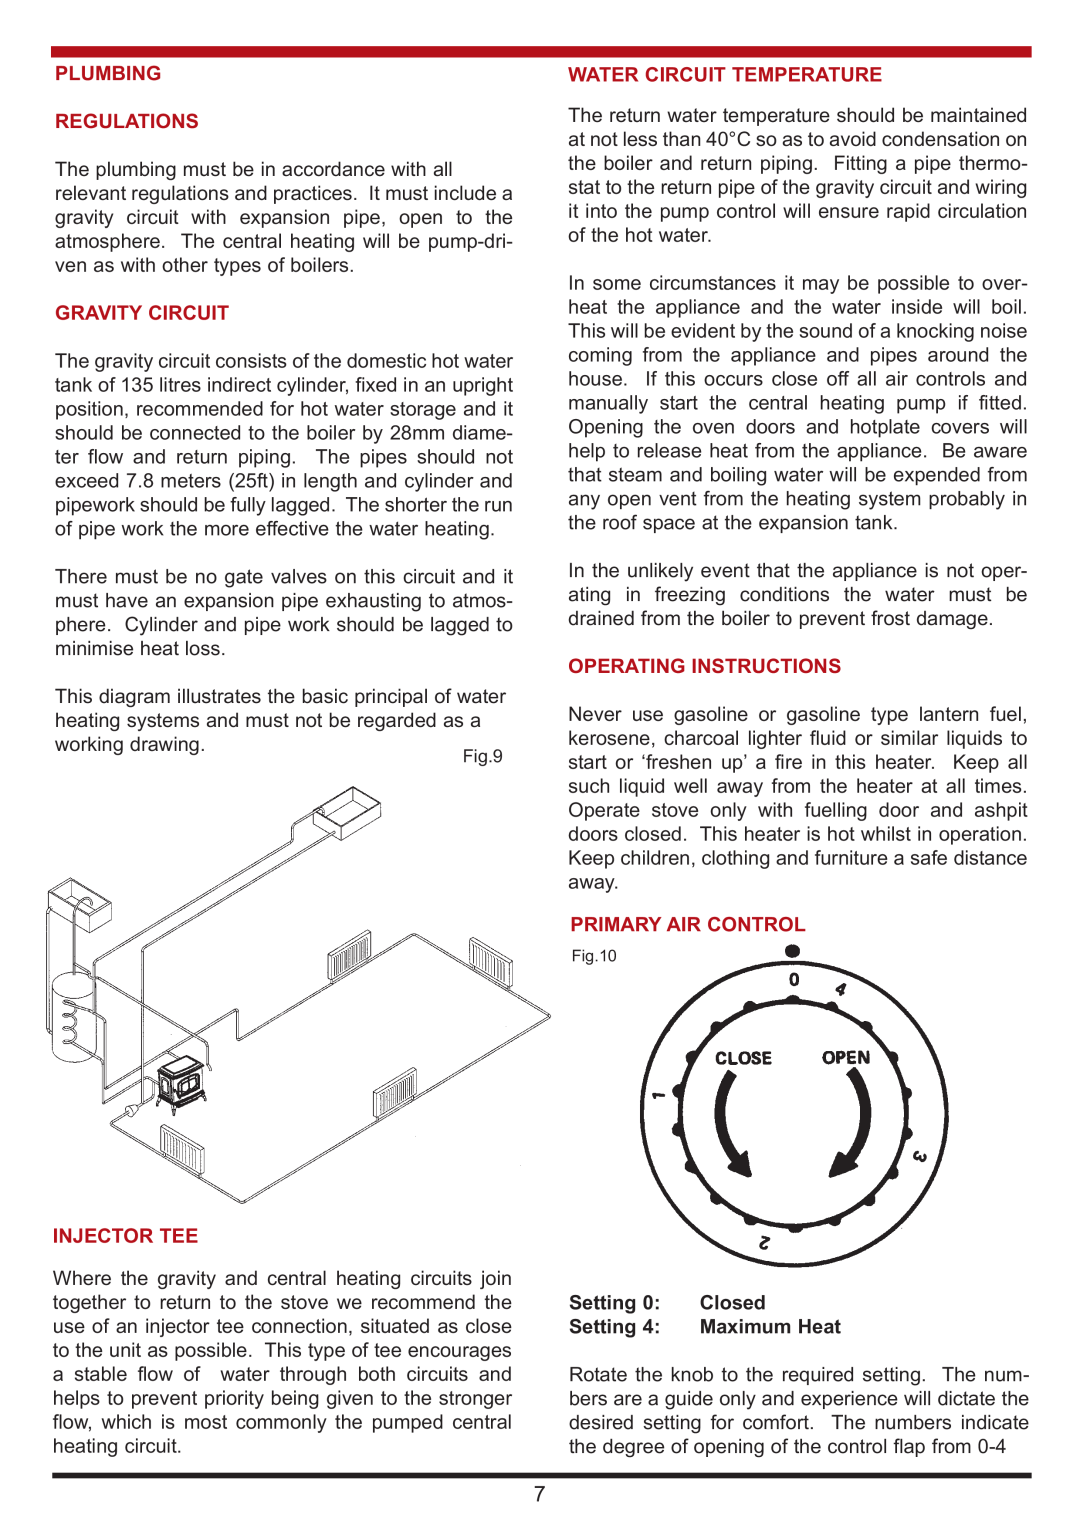 Aga Ranges Berrington manual Plumbing Regulations, Gravity Circuit, Water Circuit Temperature, Operating Instructions 